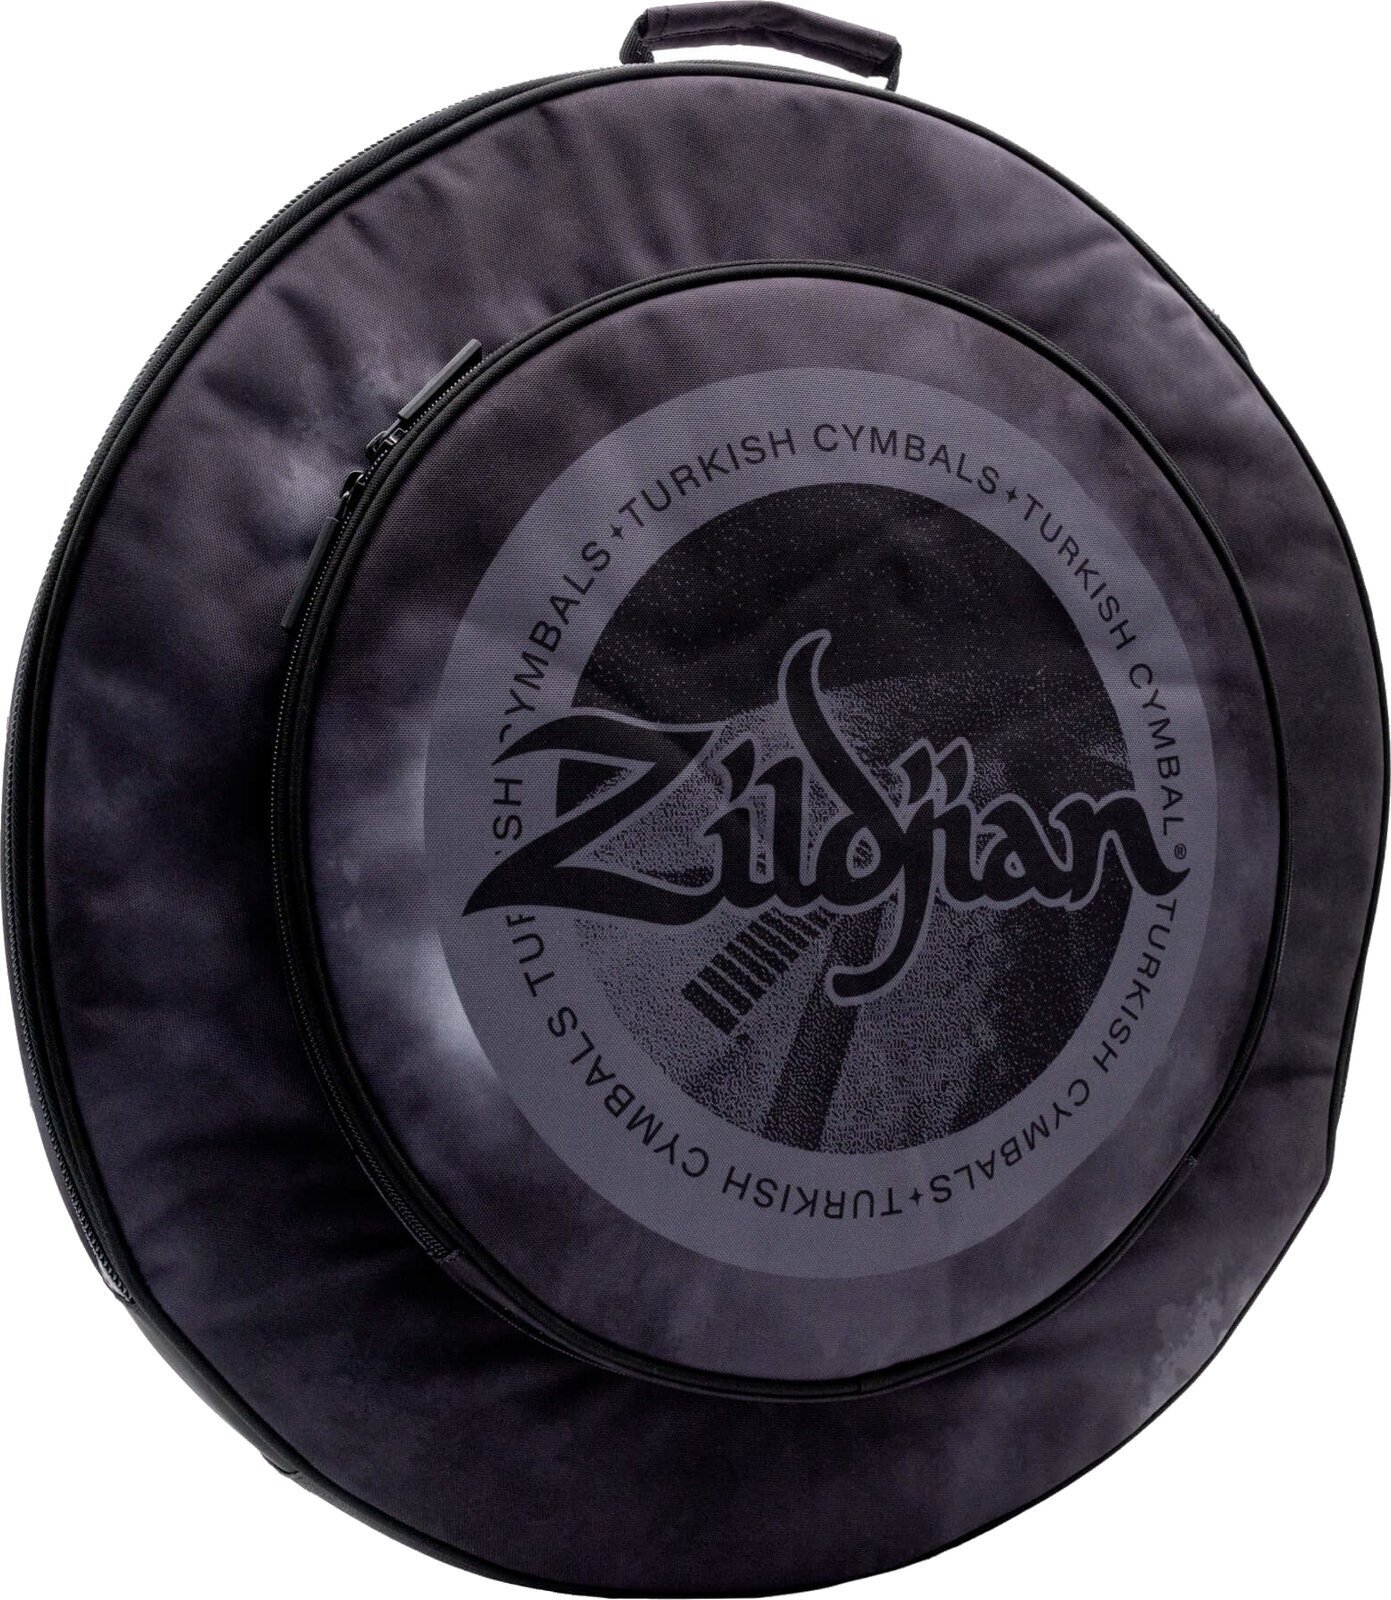 Ochranný obal pre činely Zildjian 20" Student Cymbal Bag Black Rain Cloud Ochranný obal pre činely